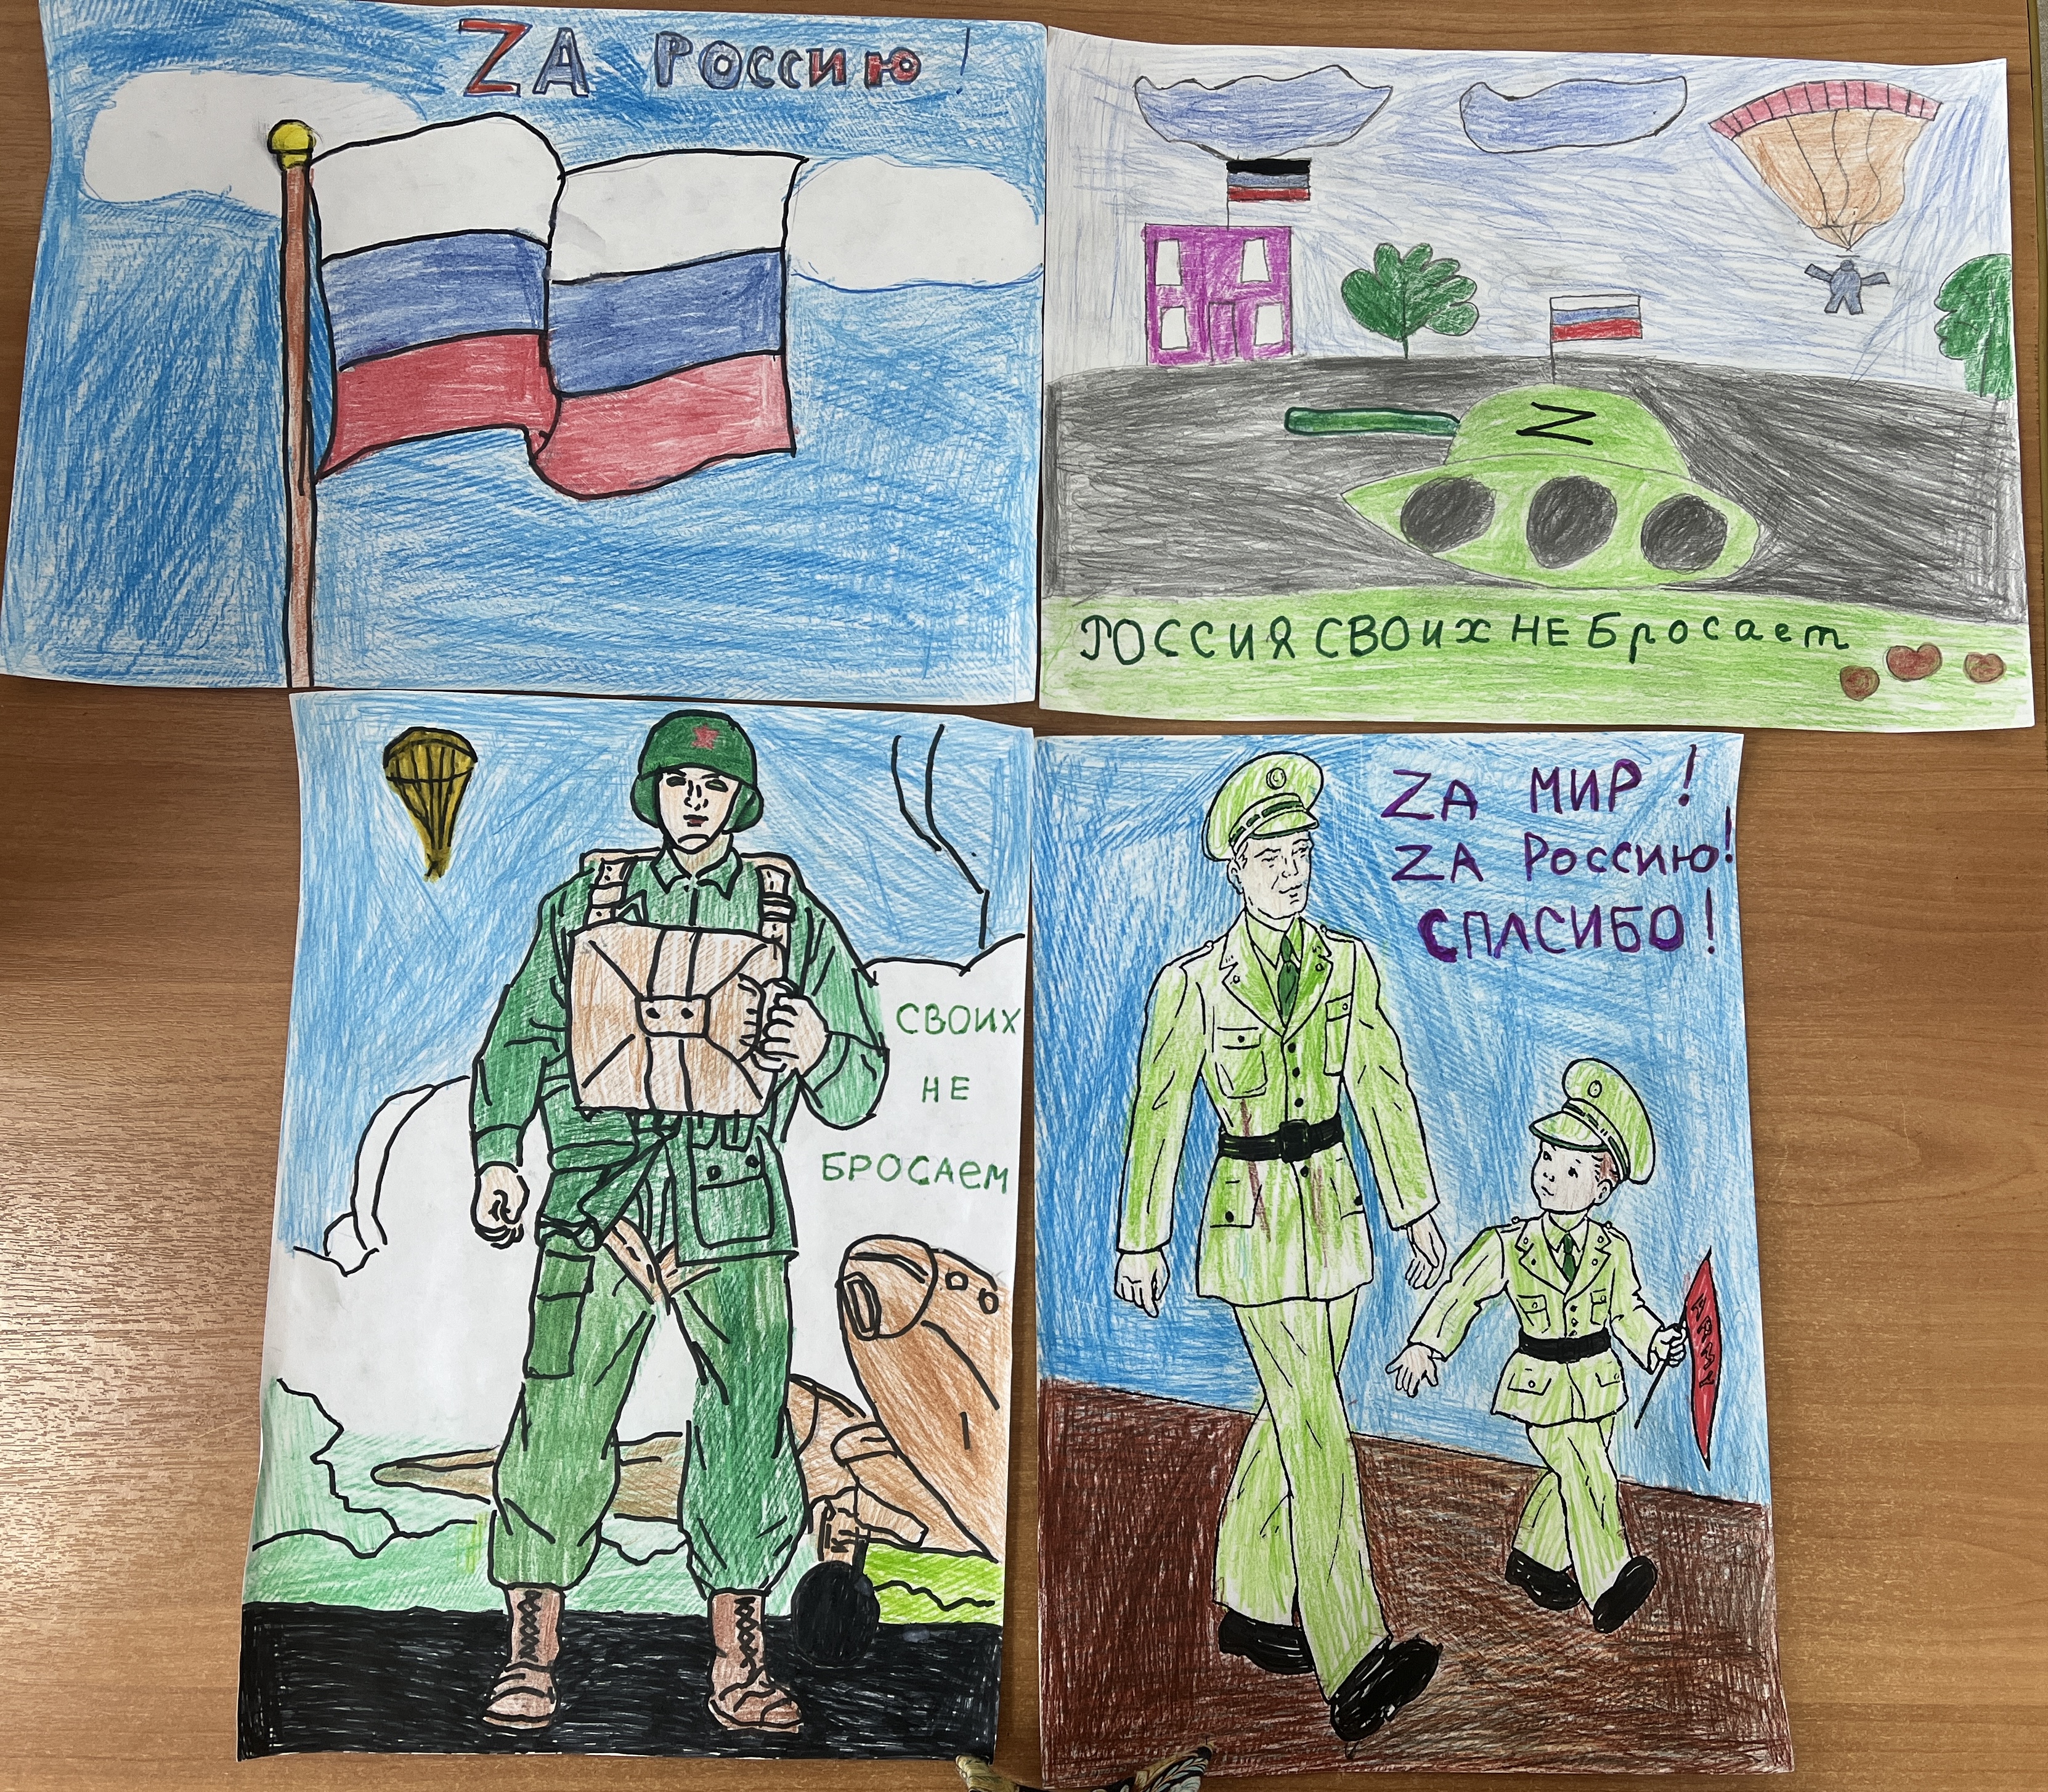 Детские рисунки к акции в поддержку российских солдат